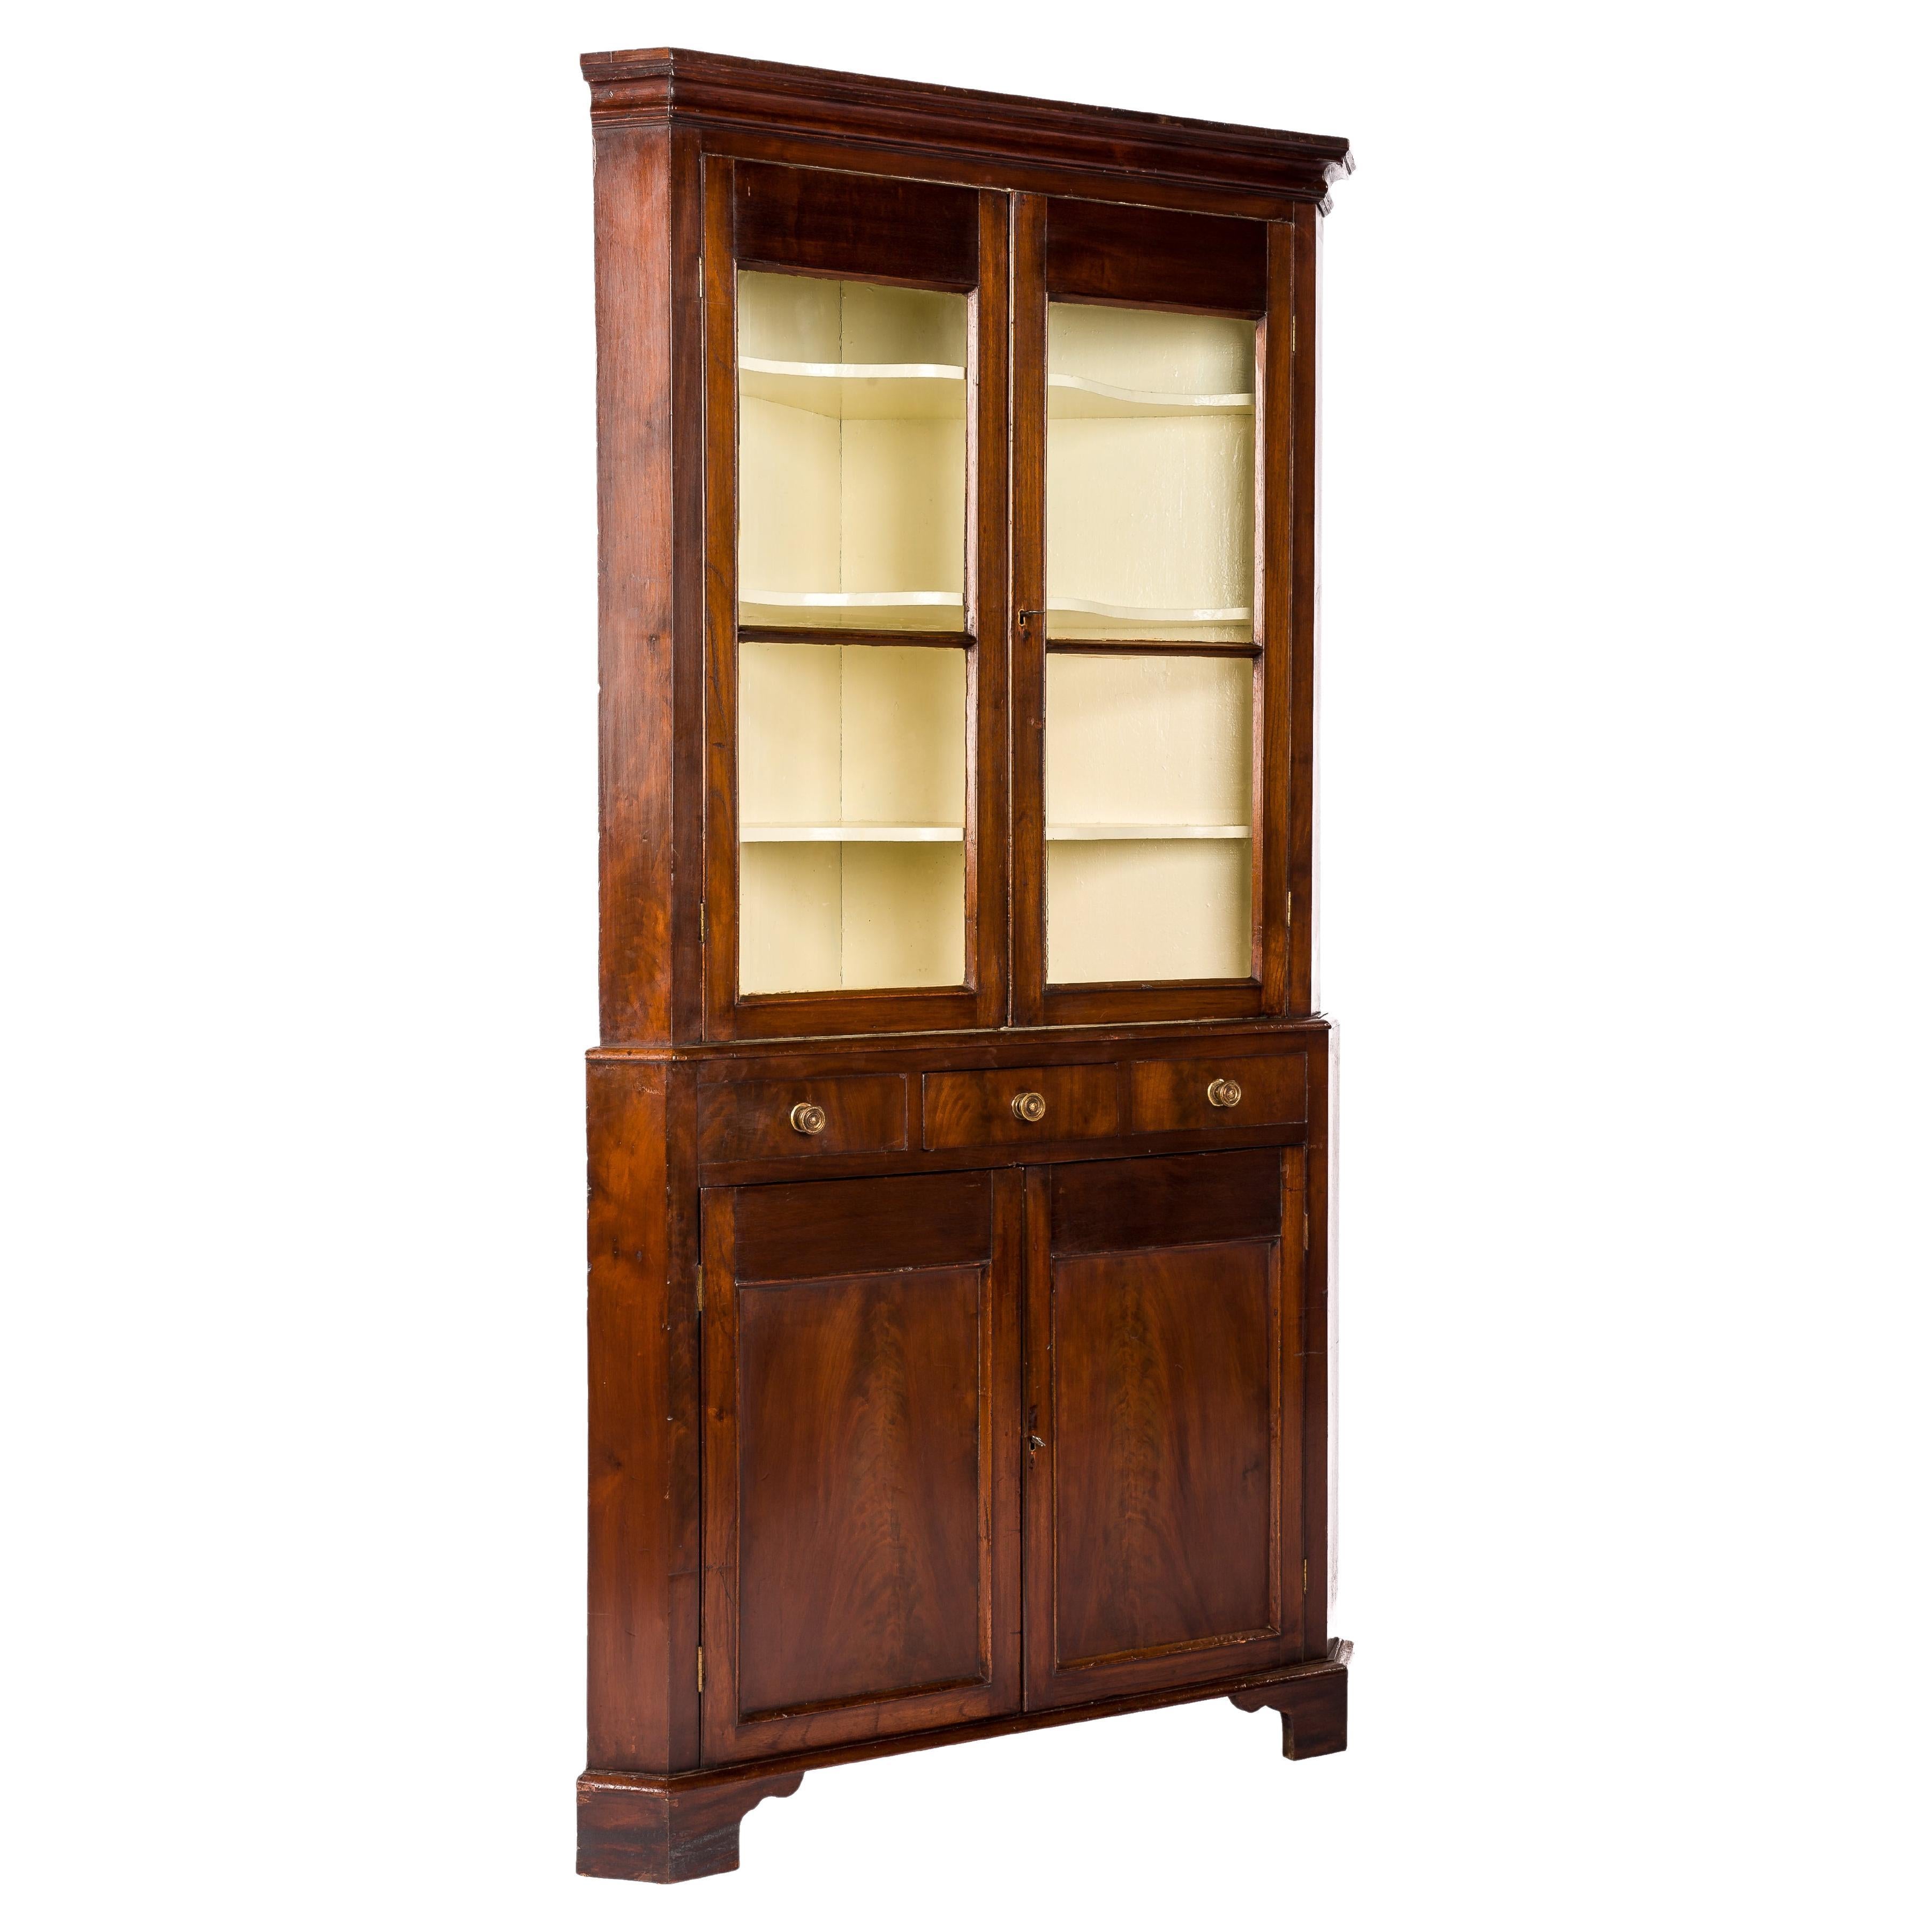 Ancienne armoire d'angle vitrée en acajou de style Régence anglaise du début du 19e siècle